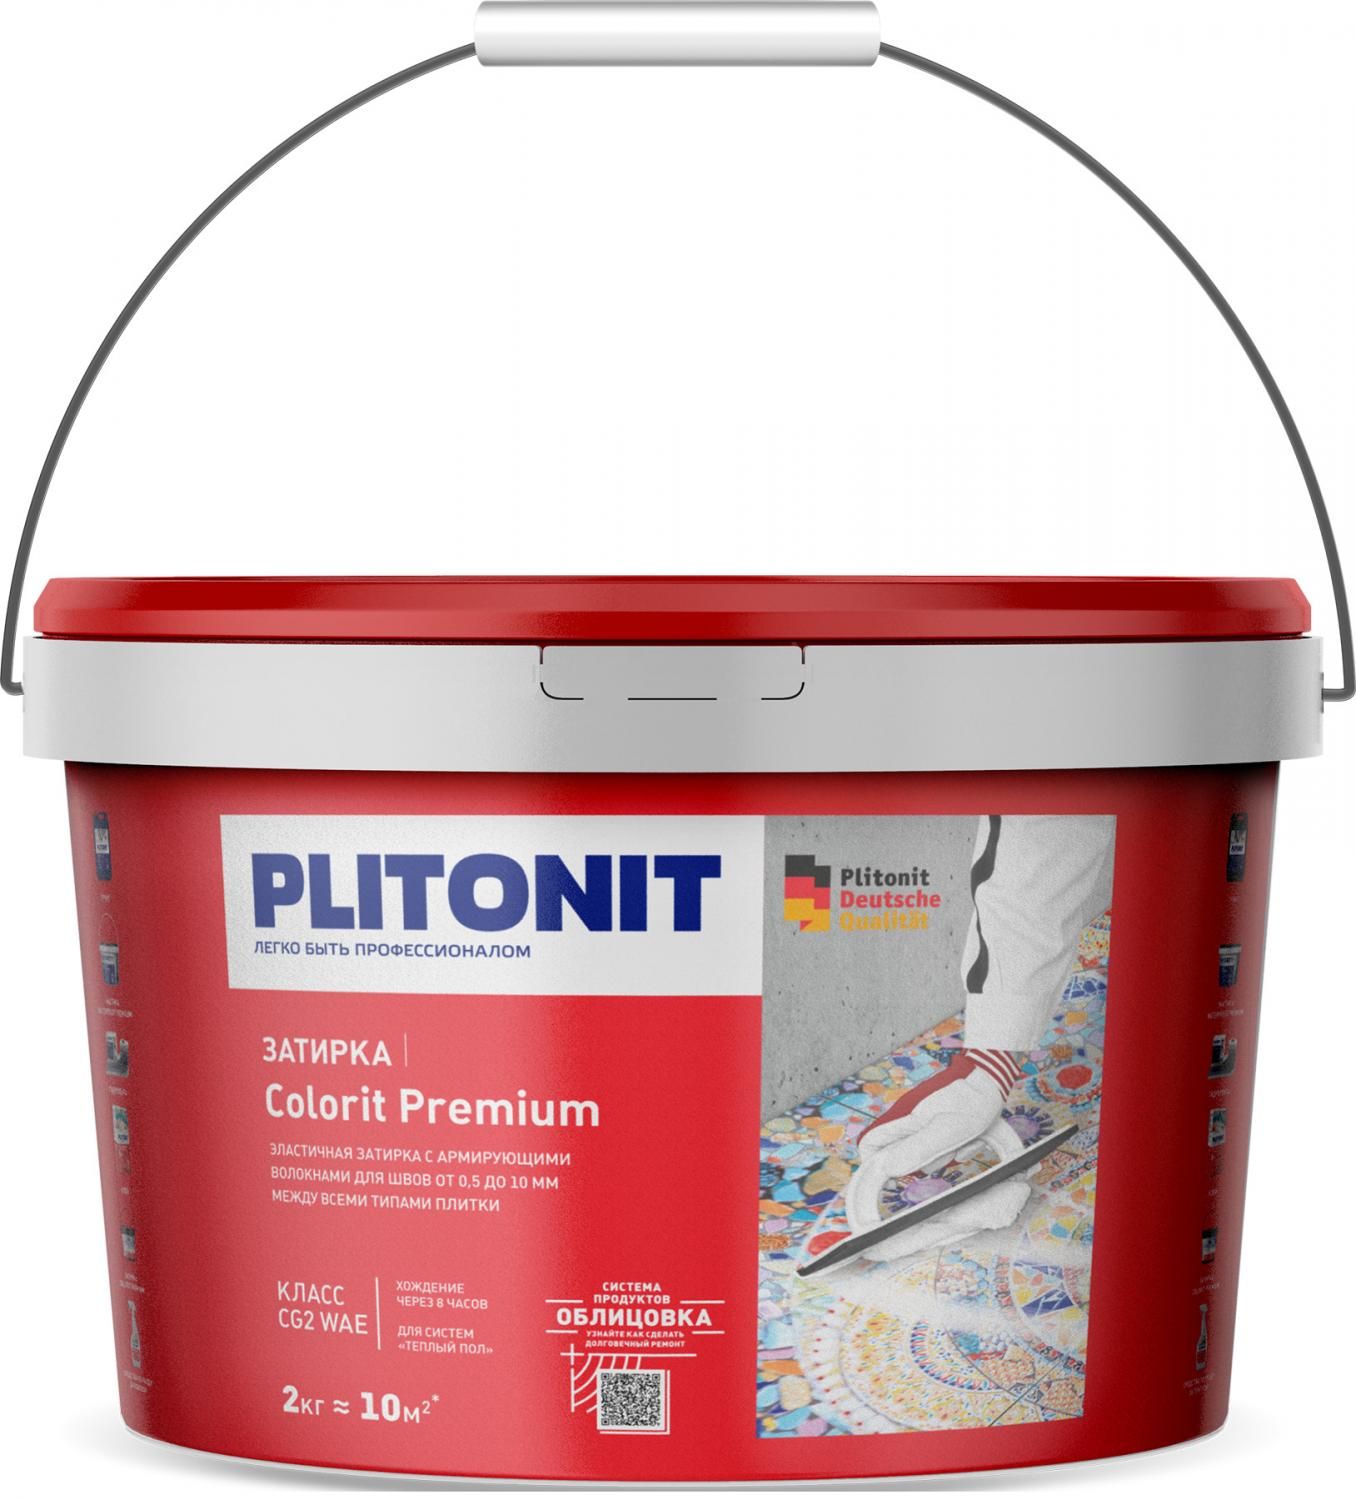 Купить Затирка Plitonit Colorit Premium синяя 2 кг цементная